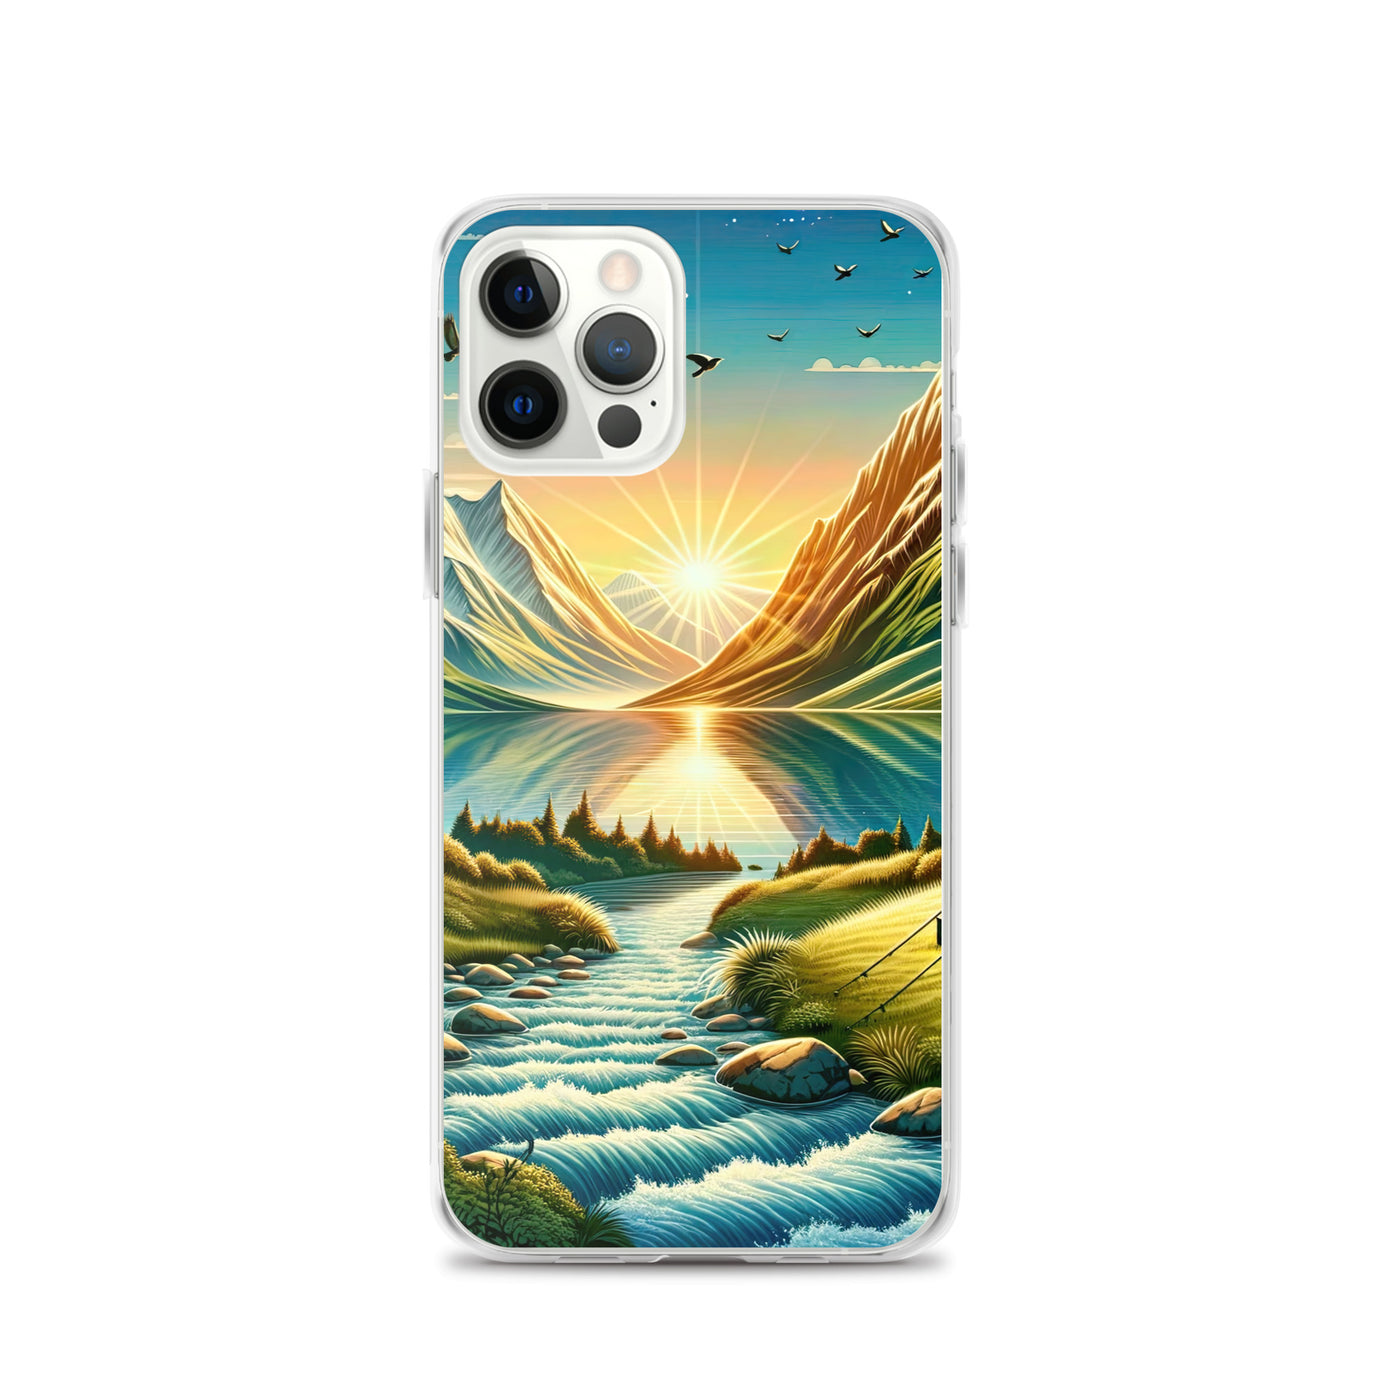 Zelt im Alpenmorgen mit goldenem Licht, Schneebergen und unberührten Seen - iPhone Schutzhülle (durchsichtig) berge xxx yyy zzz iPhone 12 Pro